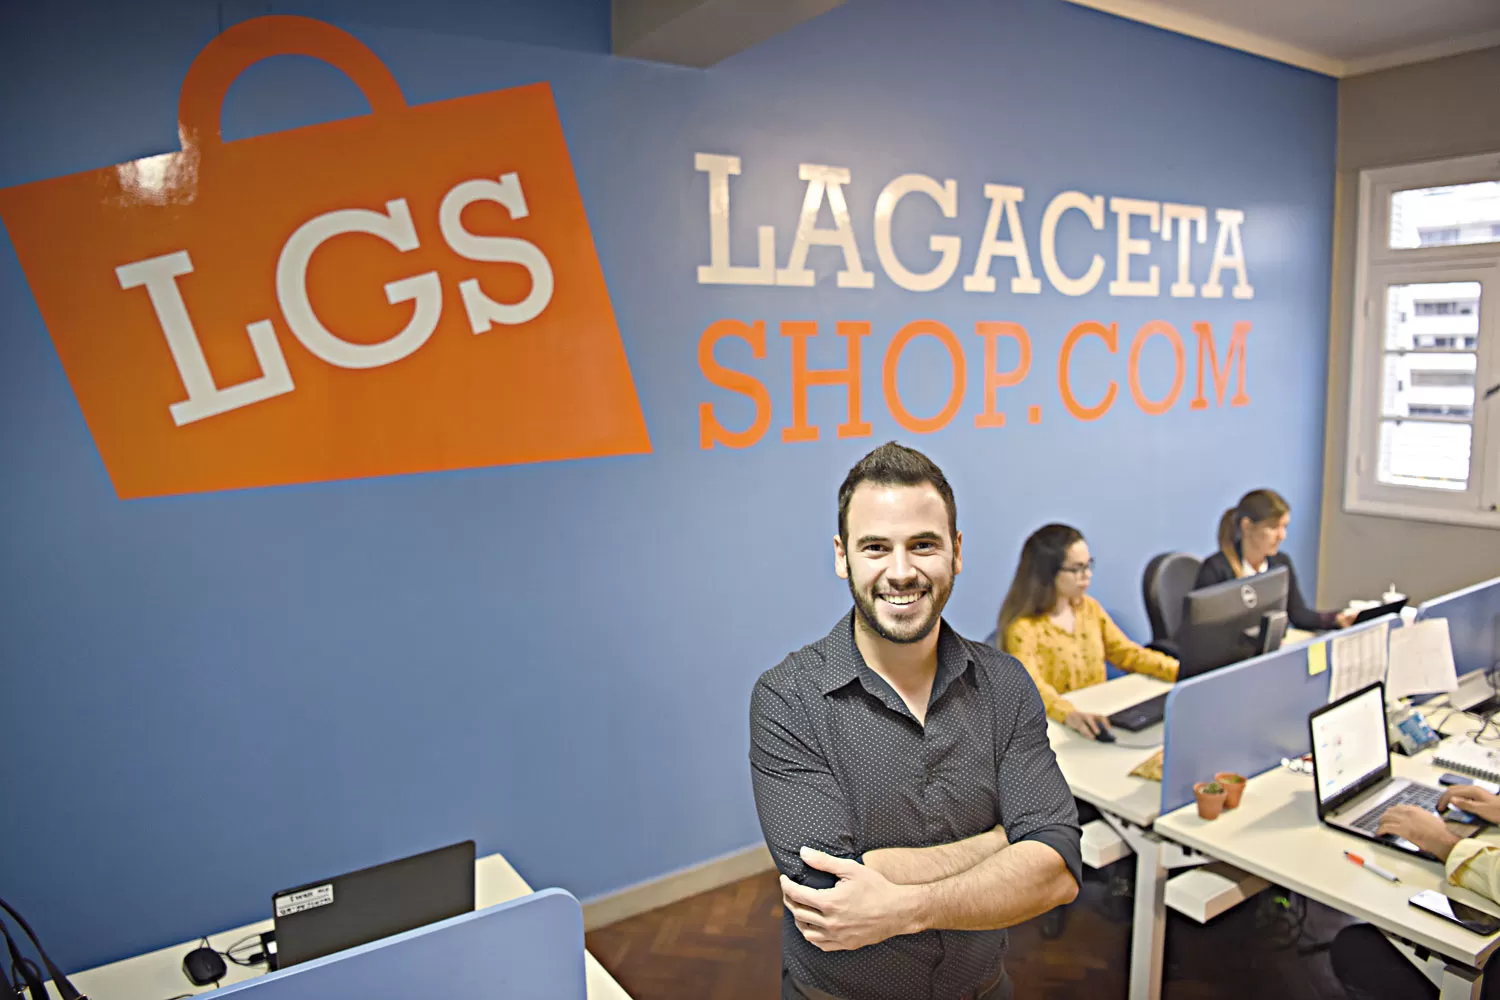 LA GACETA Shop abrió sus puertas para sumarse a nuevos hábitos de consumo